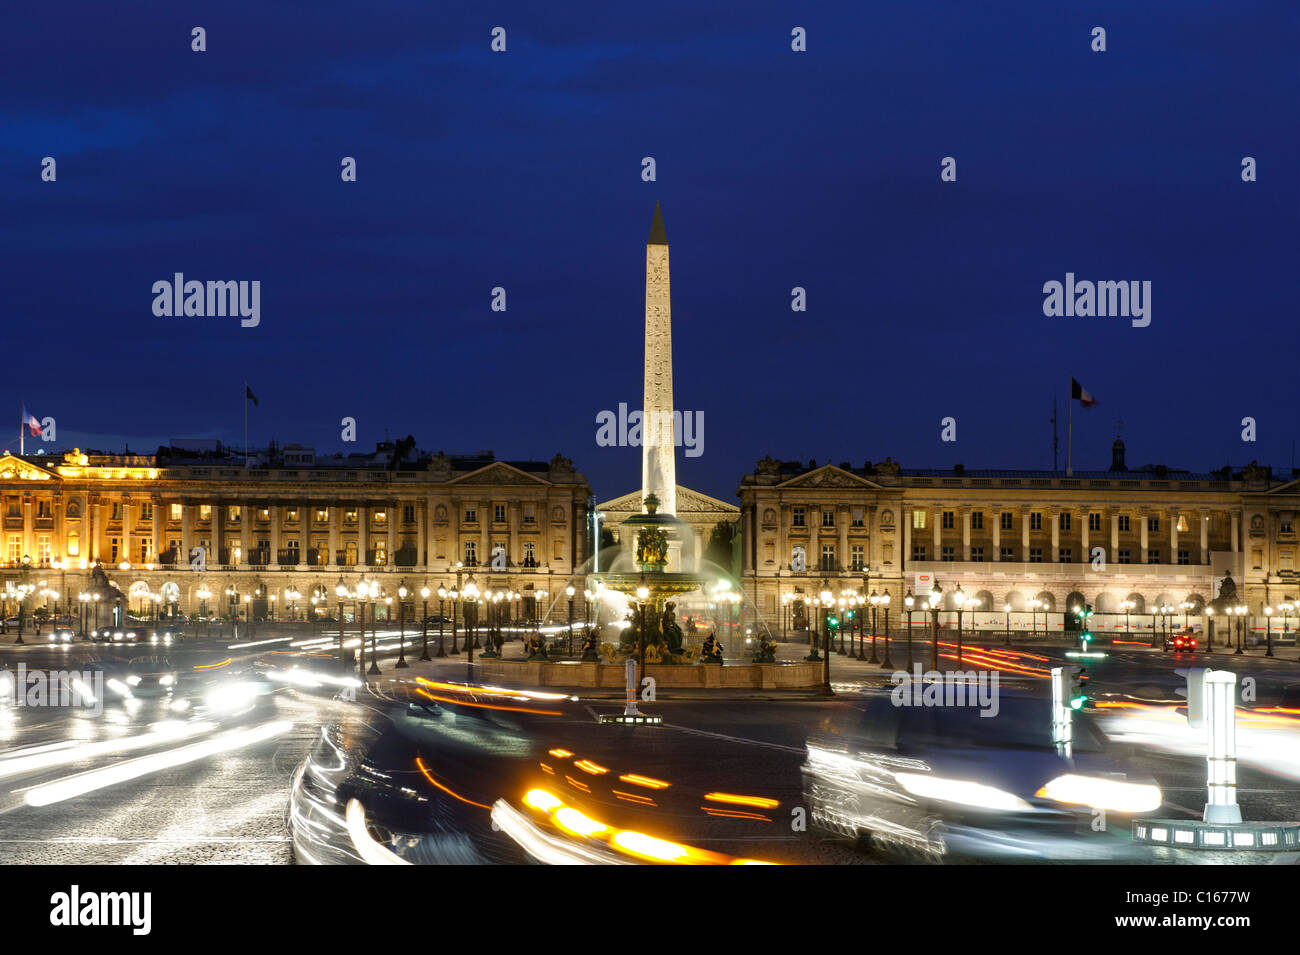 City traffic and Obelisque at the Place de la Concorde, Galerie Nationale du Jeu de Paume, Musee de l'Orangerie, Paris, France Stock Photo